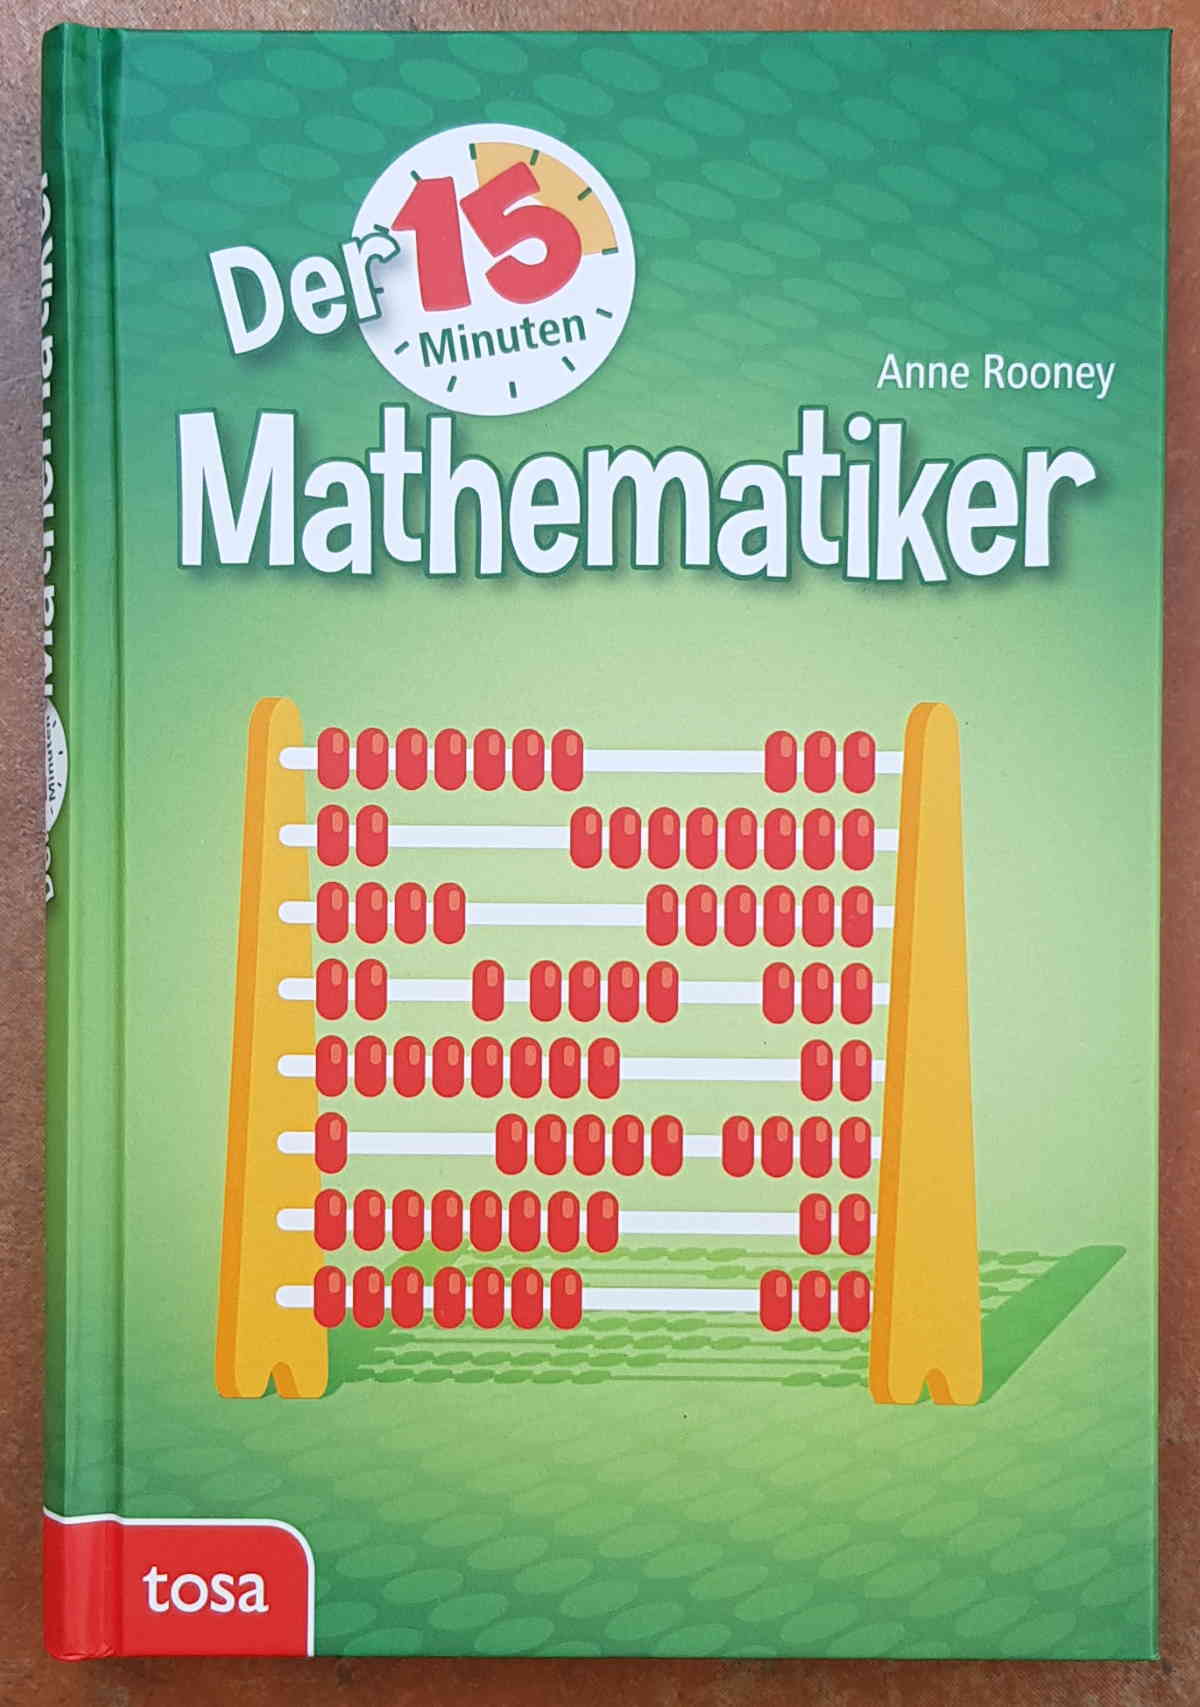 Anne Rooney: Der 15 Minuten Mathematiker